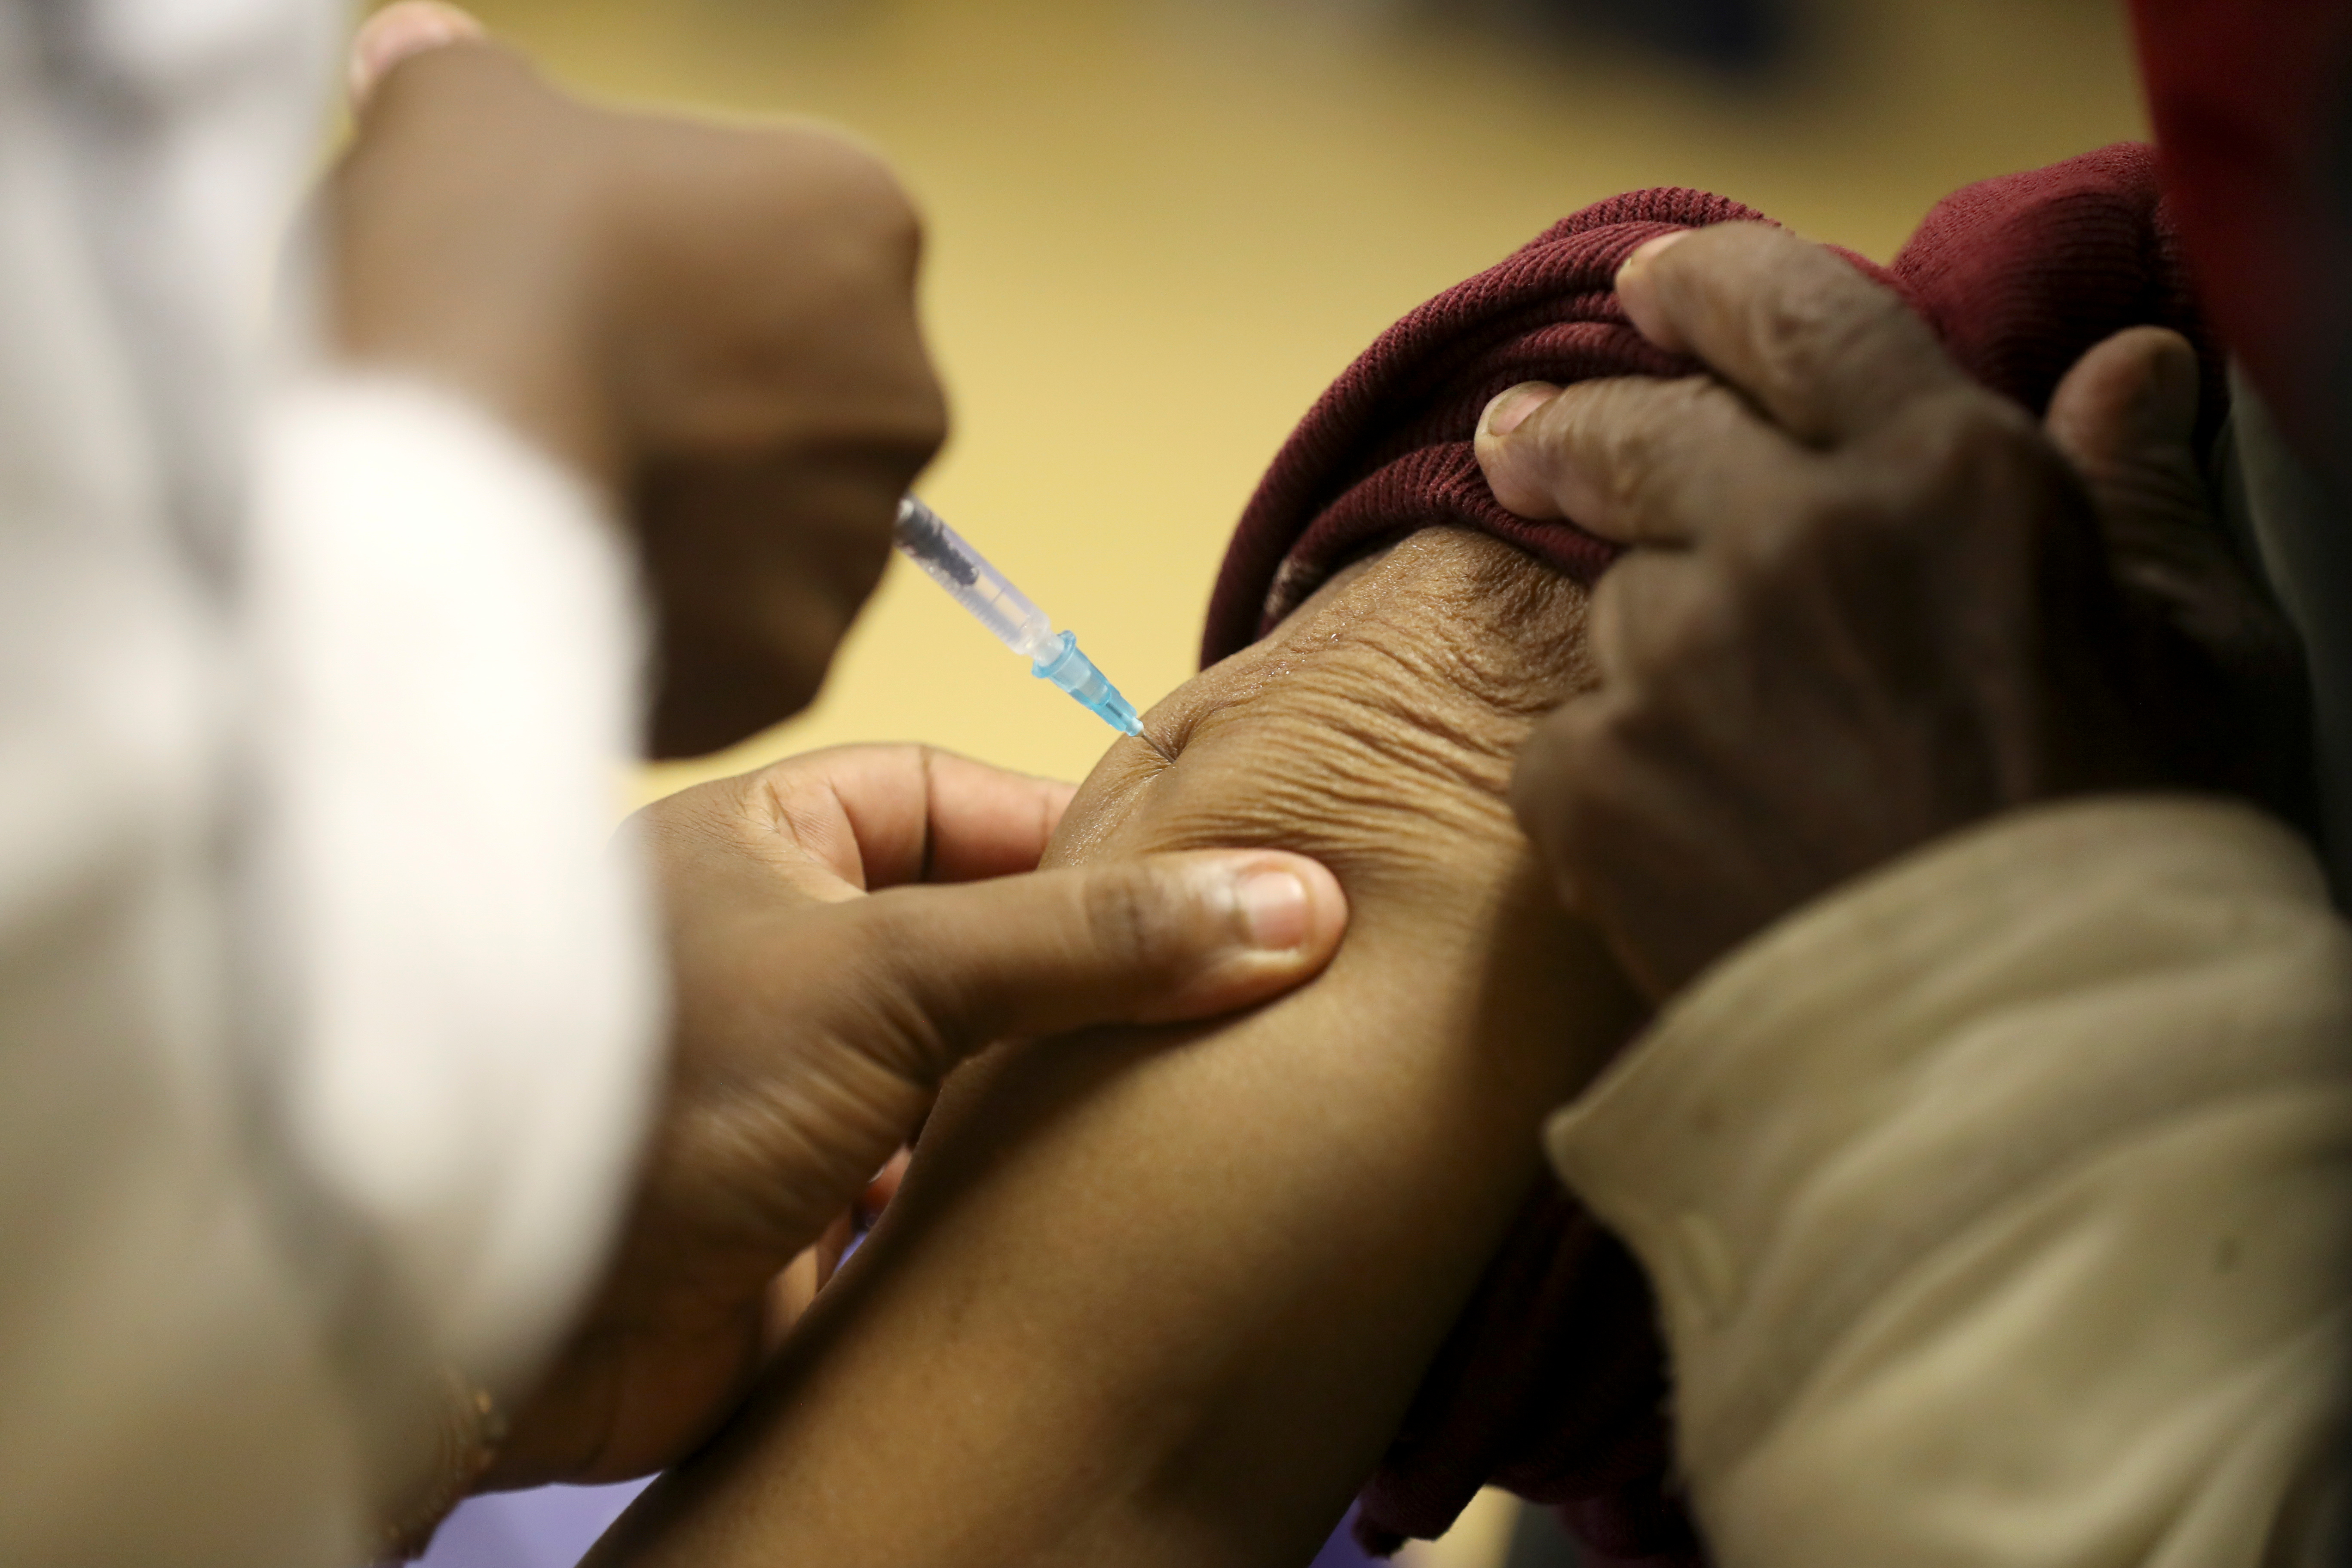 Los avances en la esperanza de vida saludable también podrían verse socavados por el impacto de la pandemia de COVID-19, “a menos que se establezcan sólidos planes de recuperación”. REUTERS/Siphiwe Sibeko